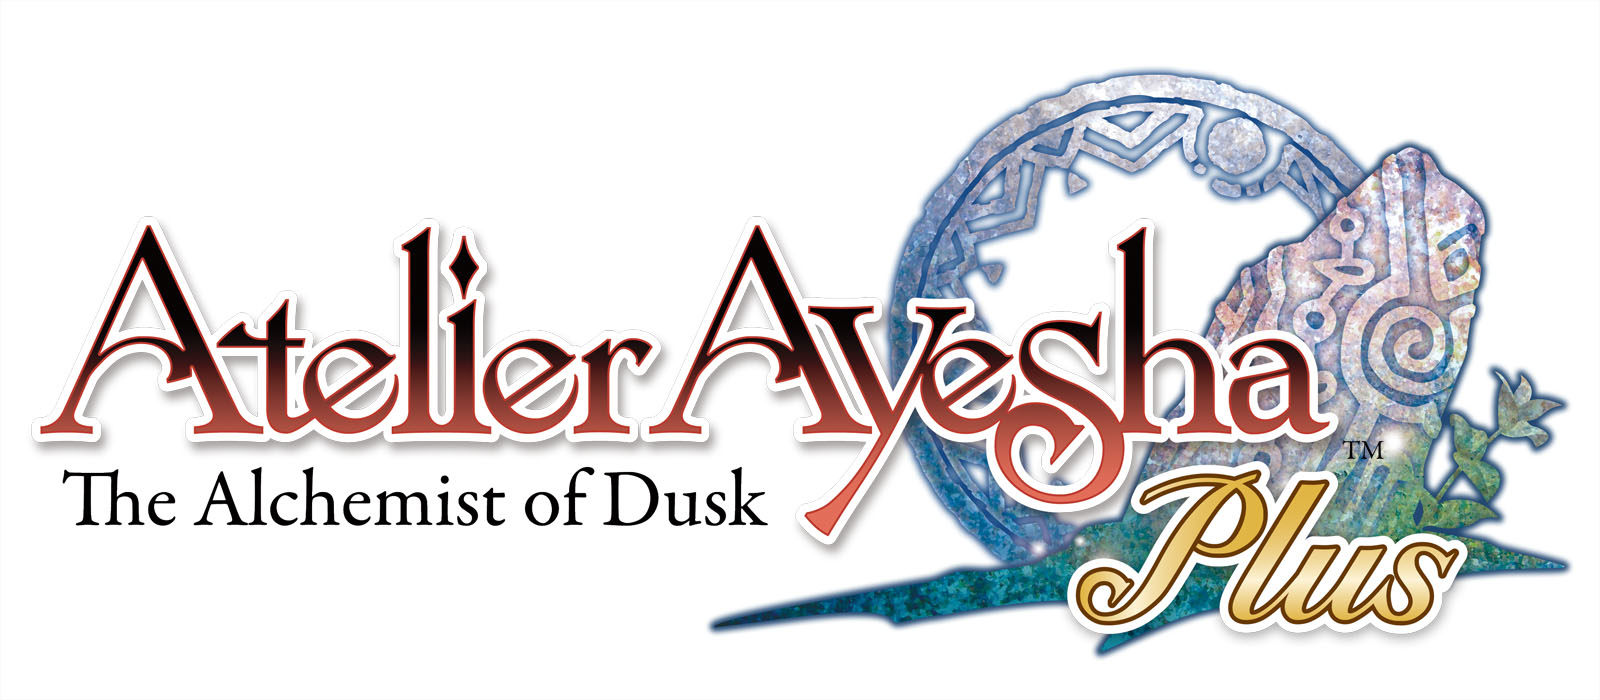 Atelier Ayesha Plus The Alchemist of Dusk logo 002